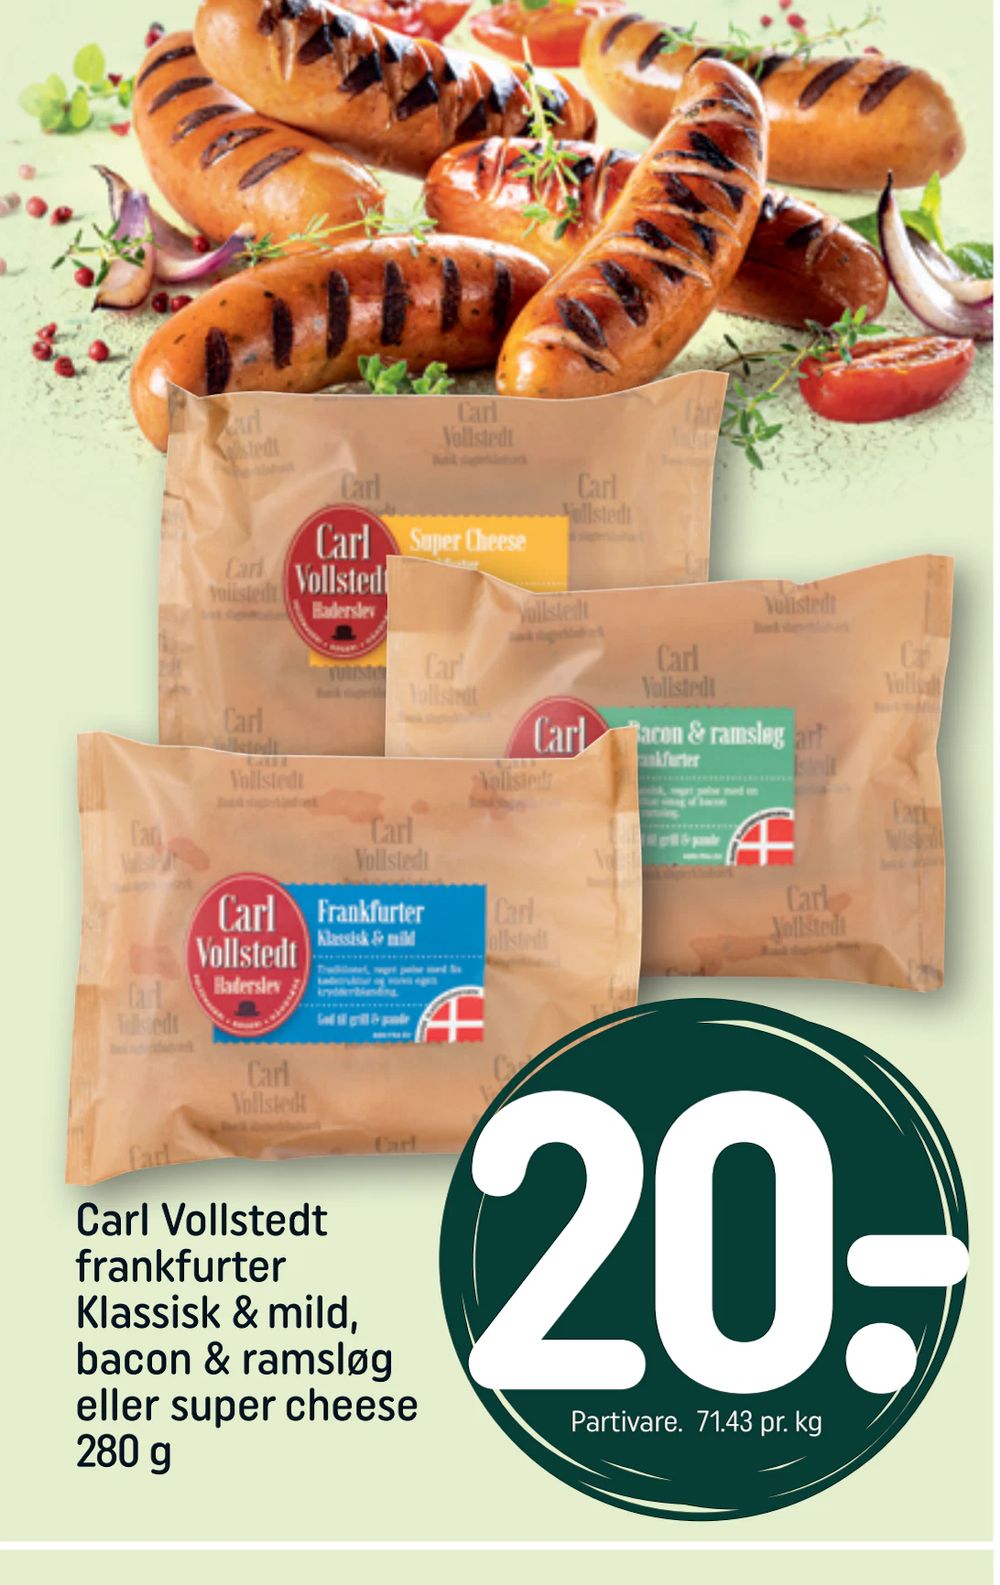 Tilbud på Carl Vollstedt frankfurter Klassisk & mild, bacon & ramsløg eller super cheese 280 g fra REMA 1000 til 20 kr.